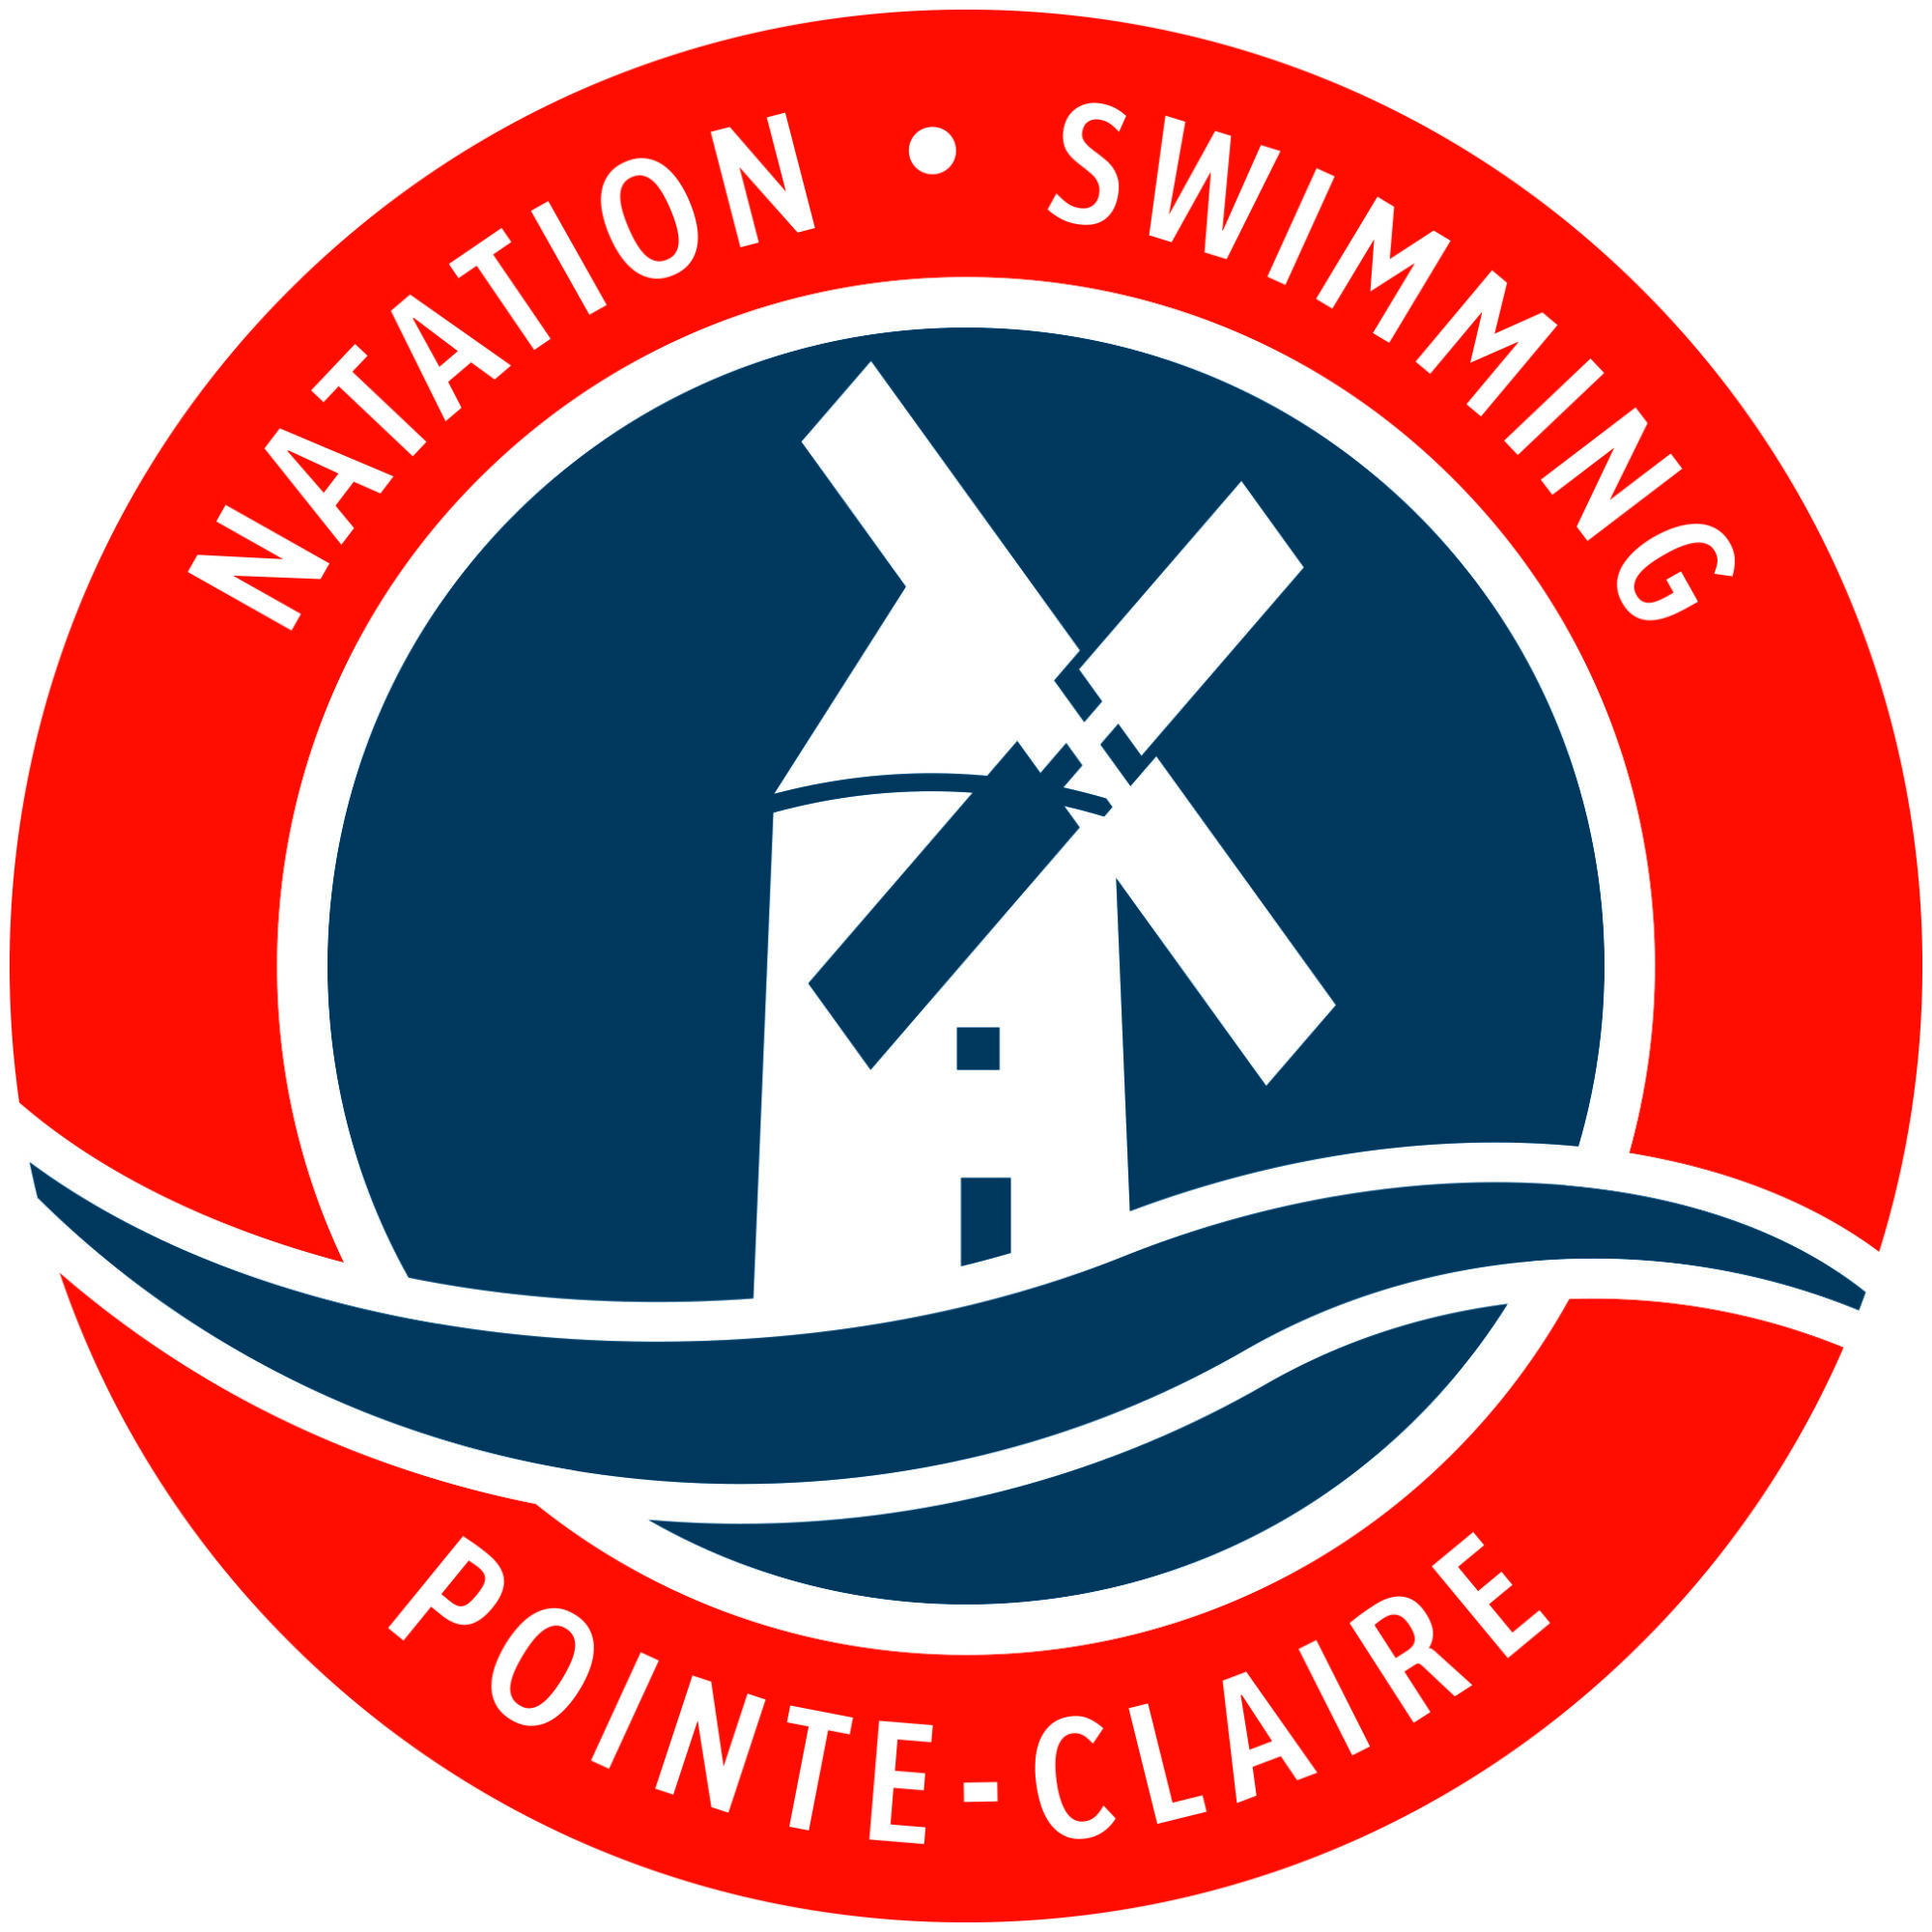 Competitive clubs - Ville de Pointe-Claire